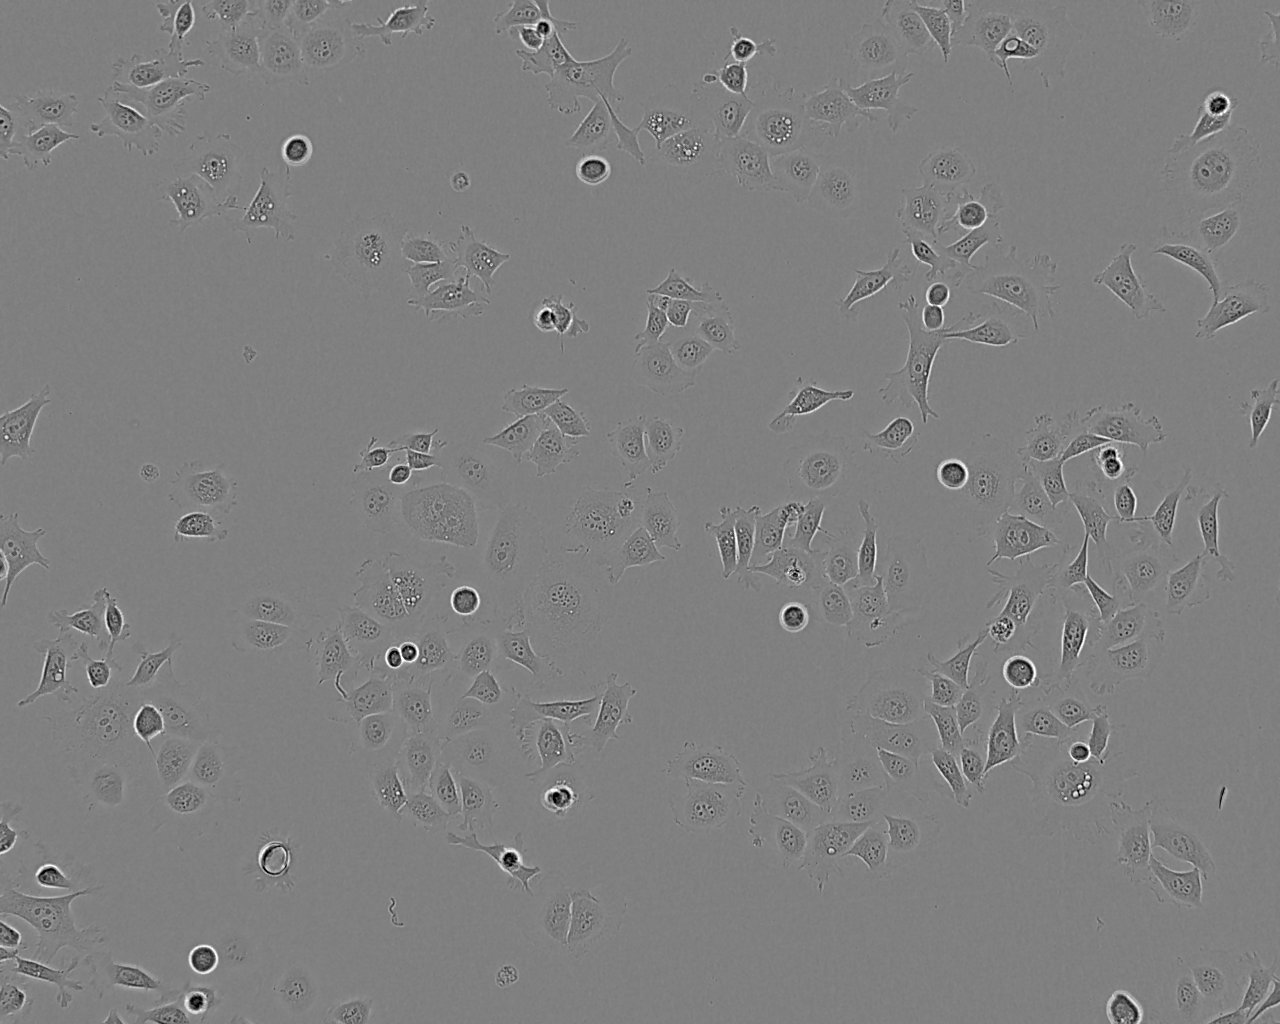 CZ-1 epithelioid cells人多发性骨髓瘤细胞系,CZ-1 epithelioid cells